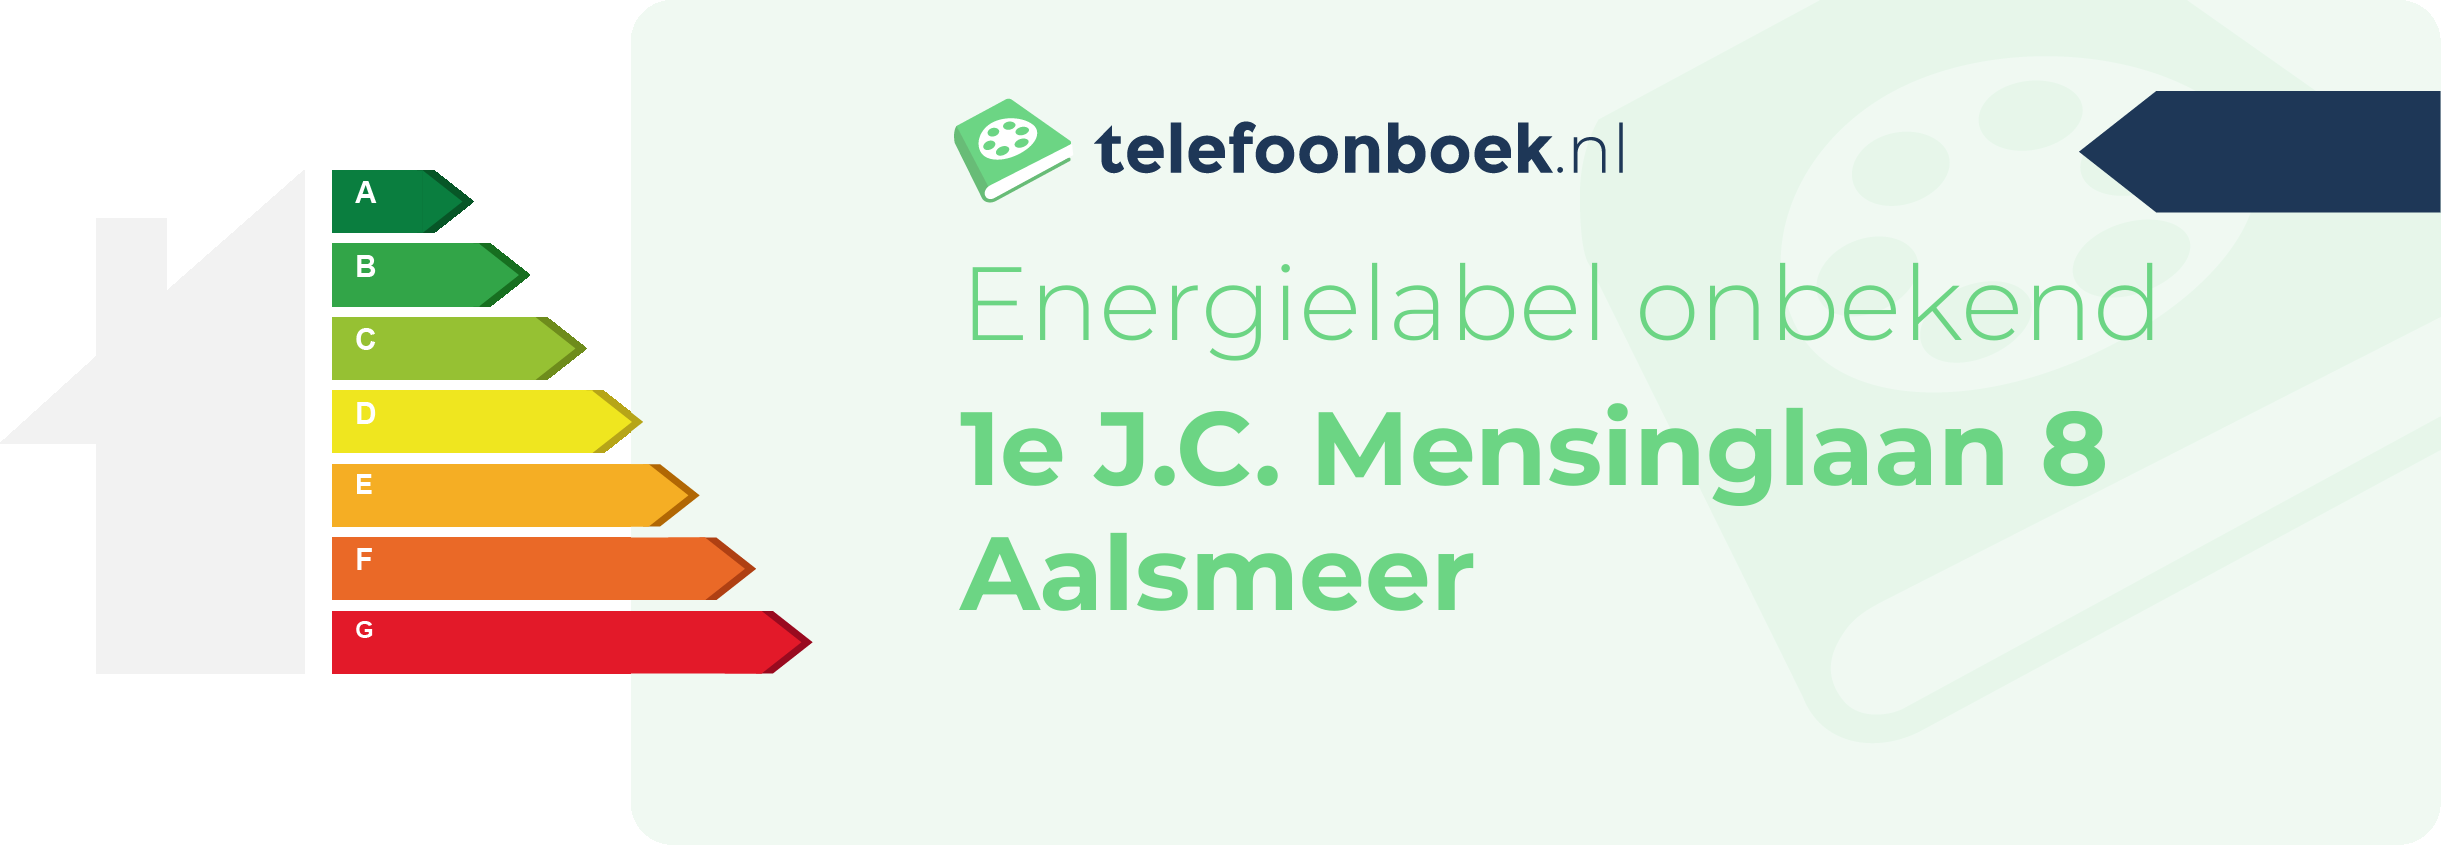 Energielabel 1e J.C. Mensinglaan 8 Aalsmeer